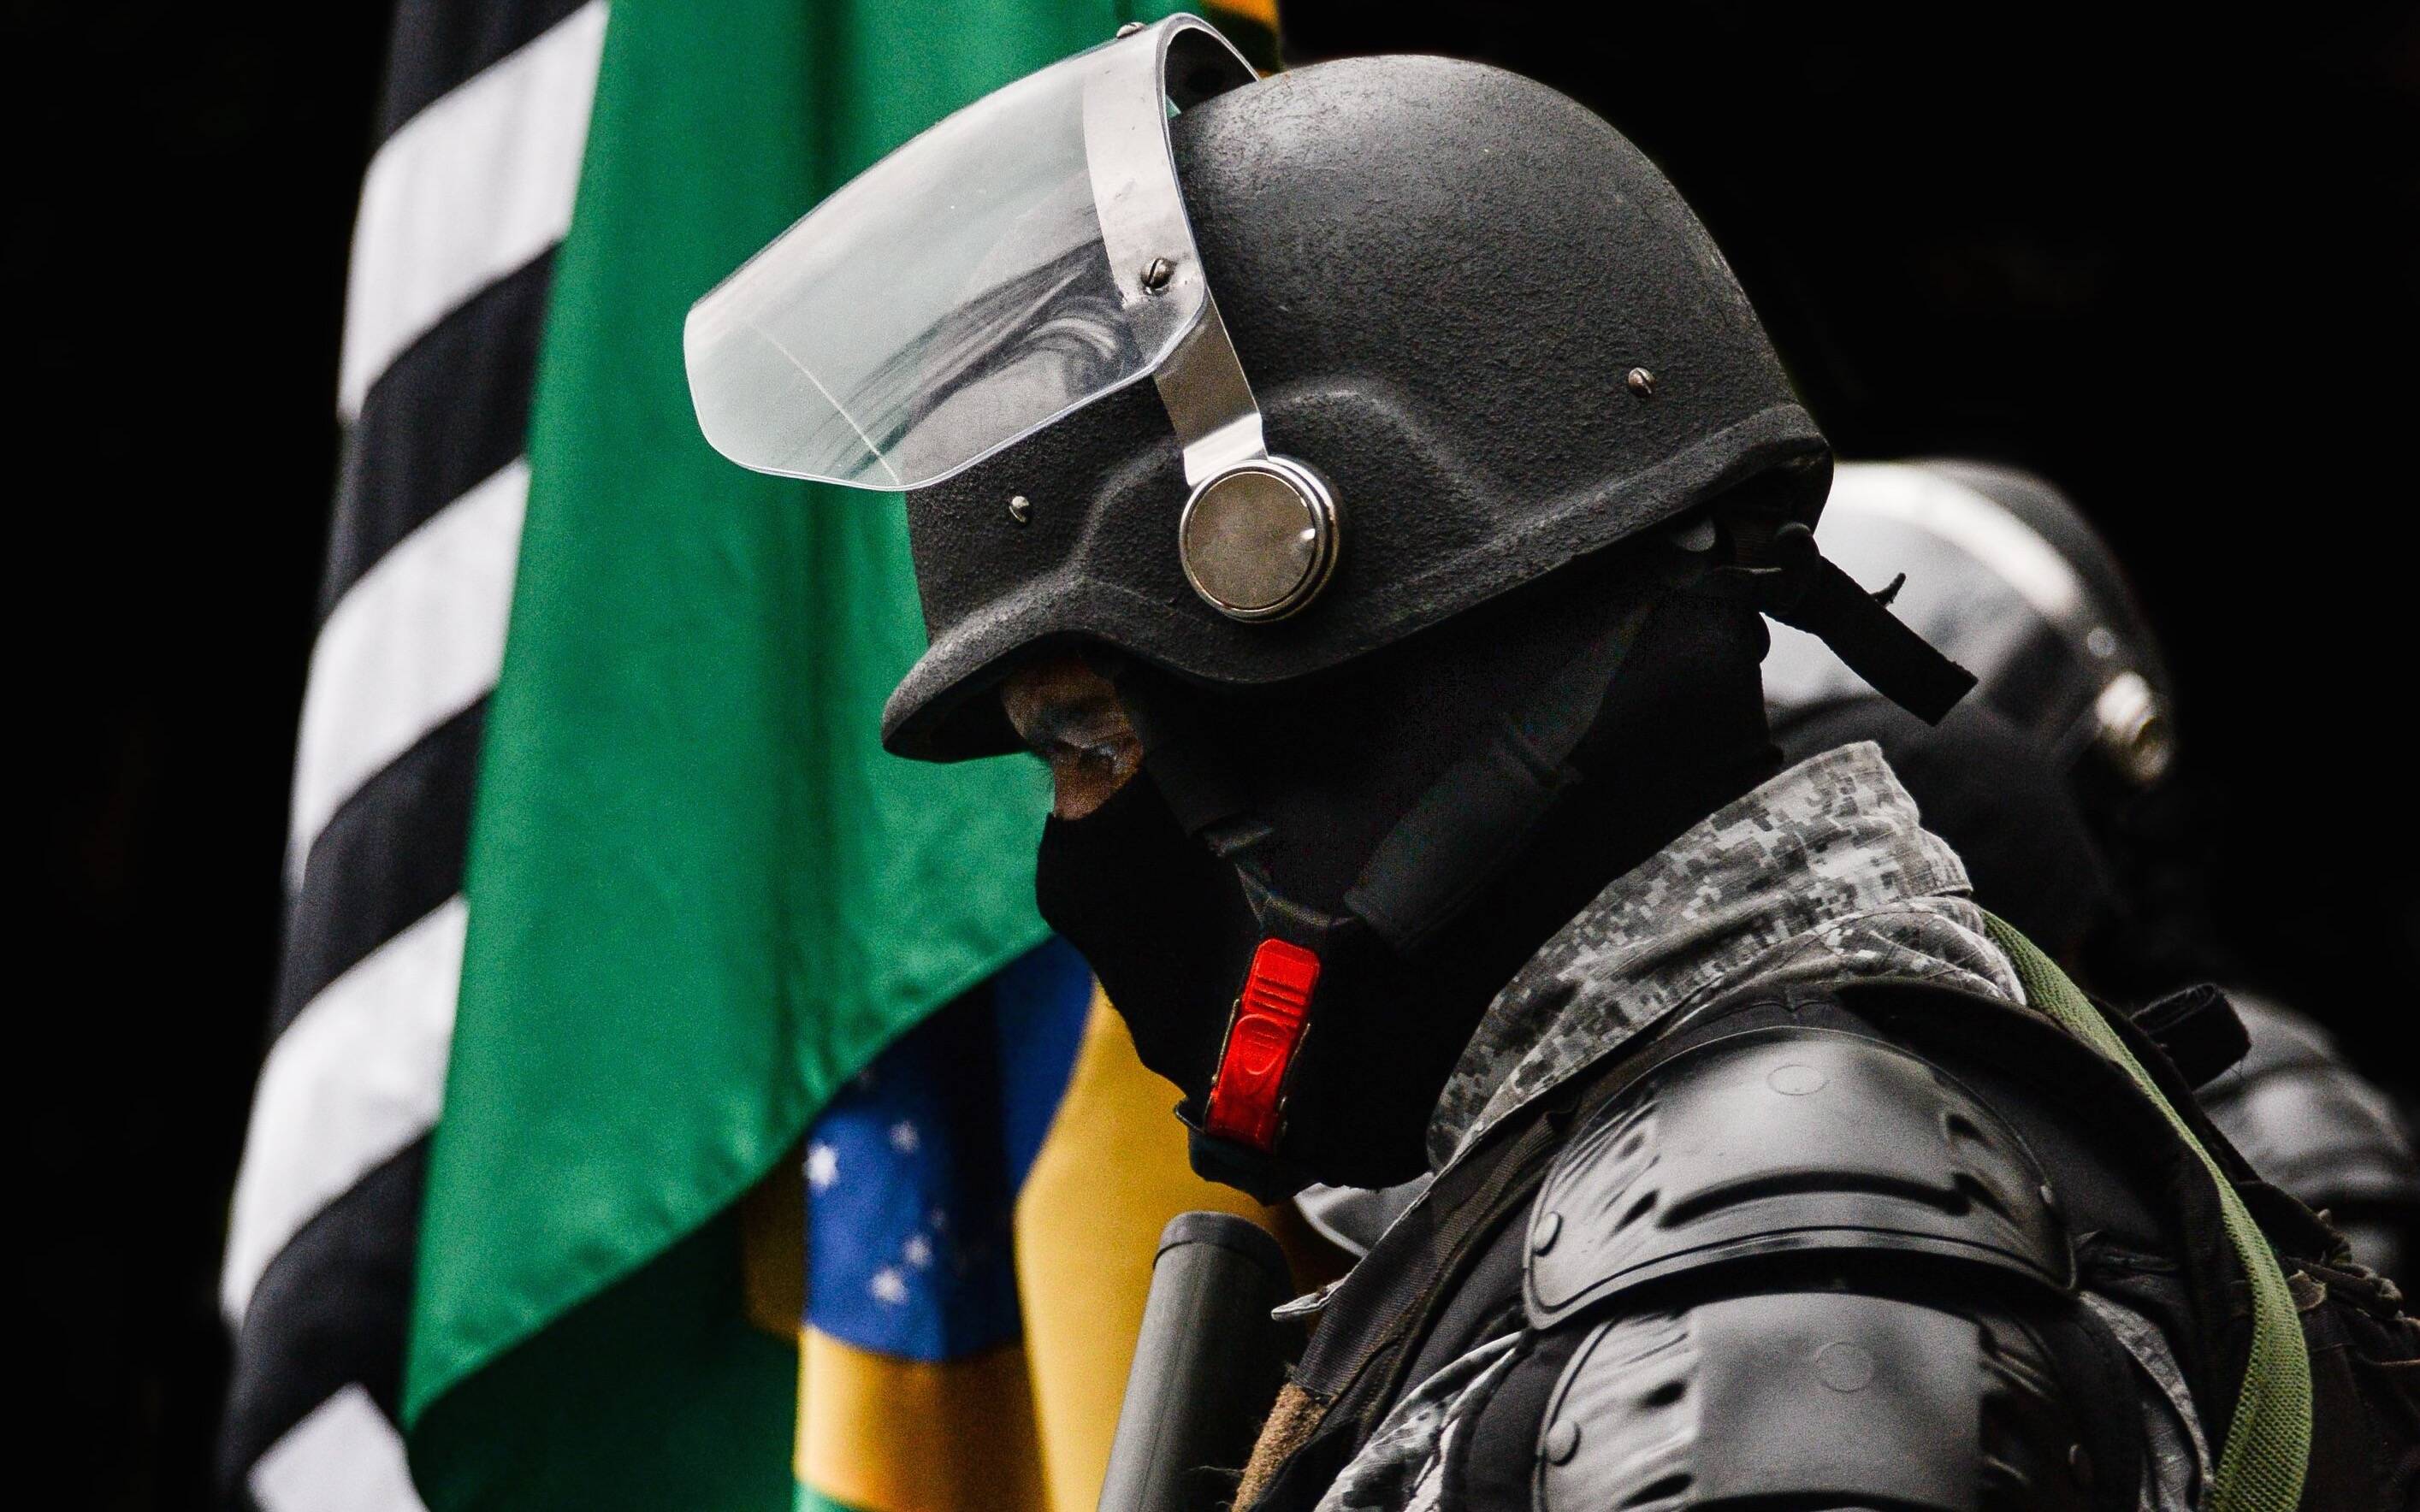 Segundo Batalhão de Choque - Polícia Militar do Estado de São Paulo. Foto: Major PM Luis Augusto Pacheco Ambar